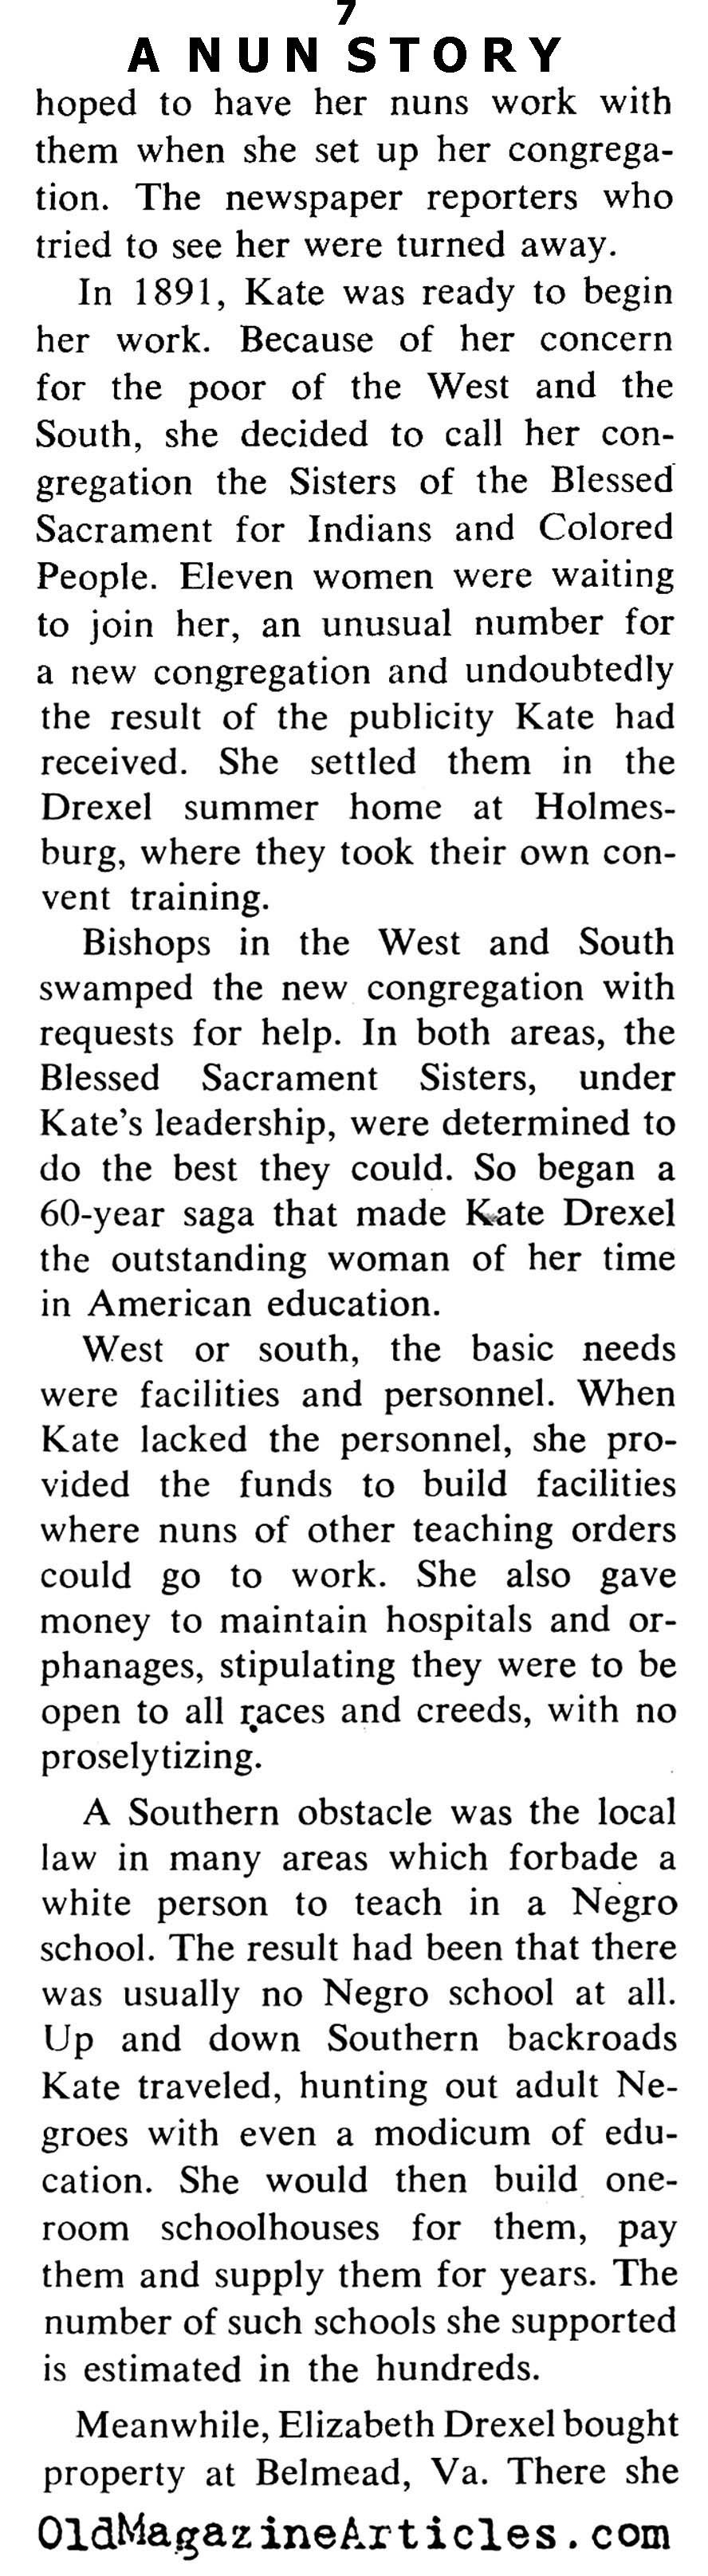 A Really Rich Nun (Coronet Magazine, 1964)